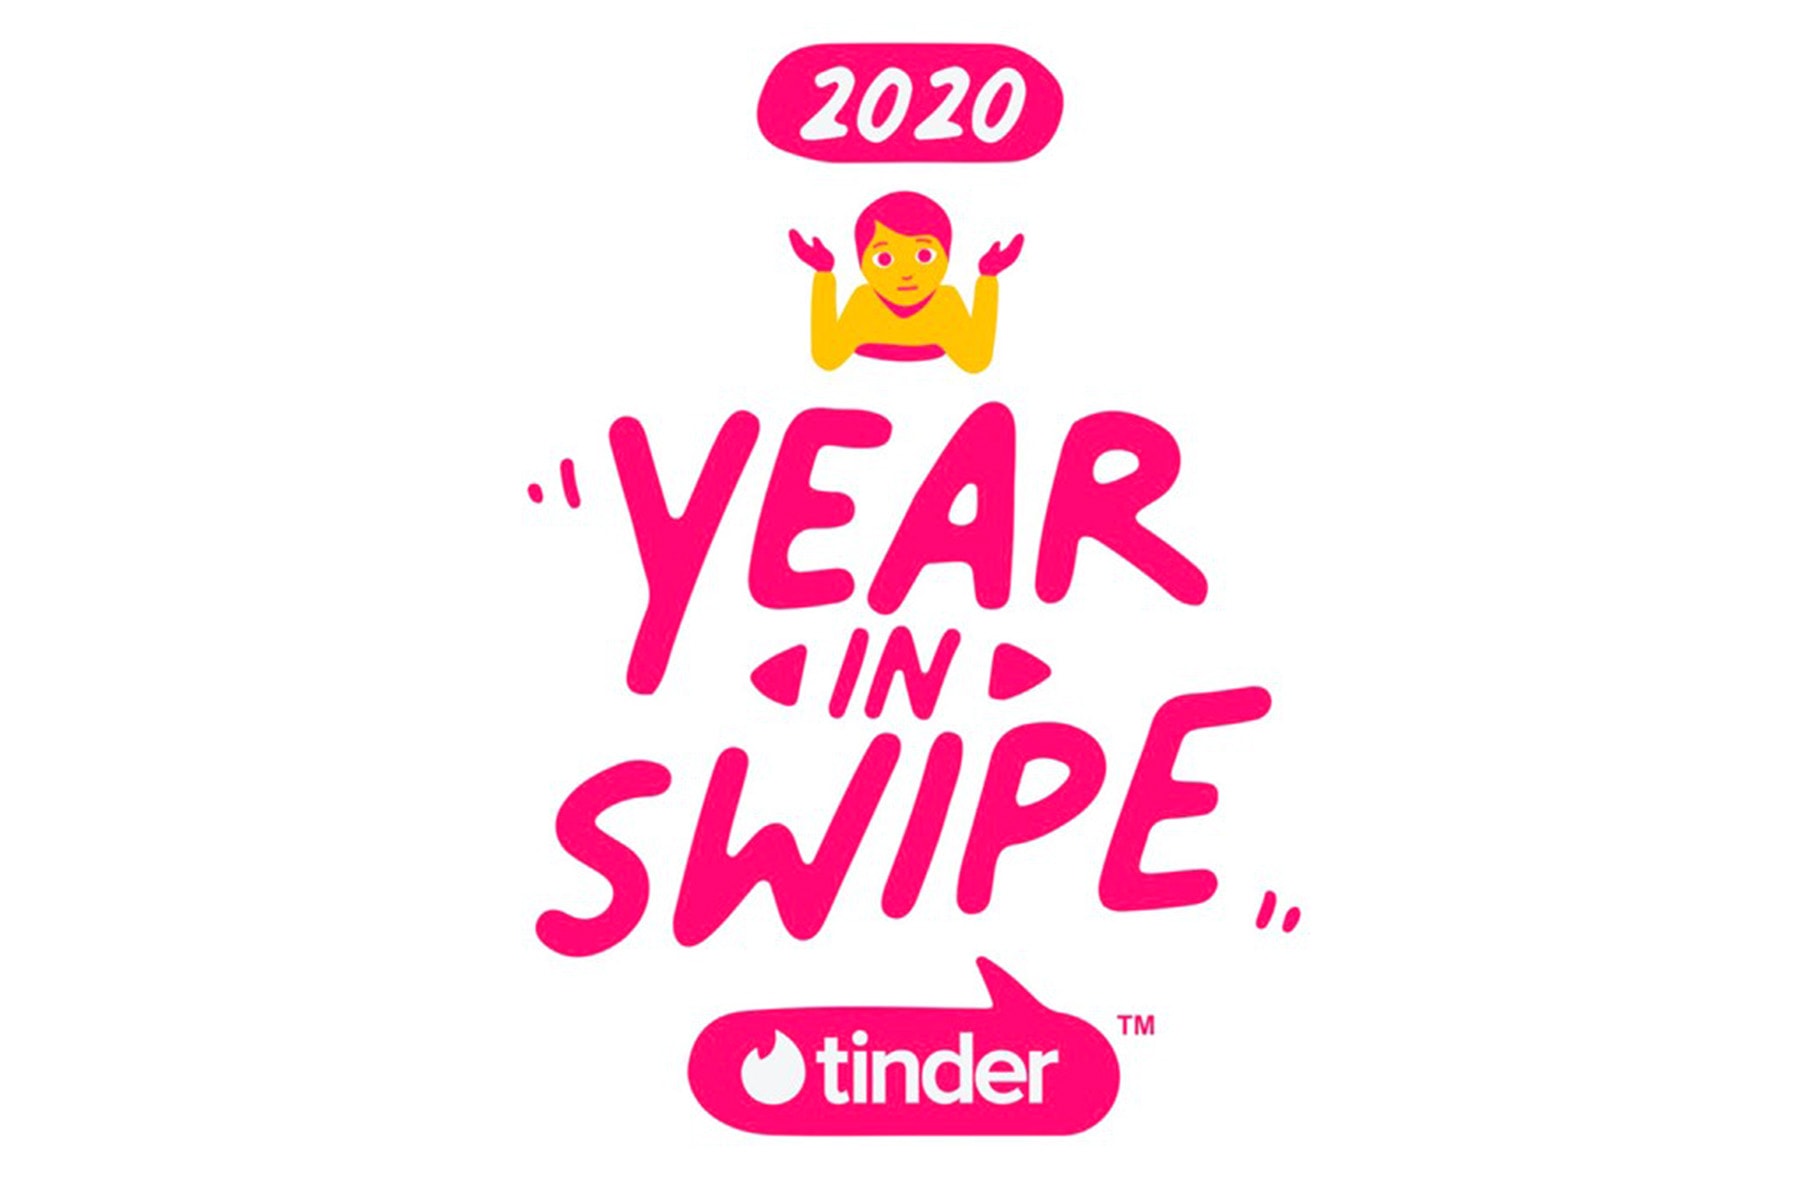 人氣交友軟體 Tinder 公佈 2020 年年度熱門聊天話題排行榜